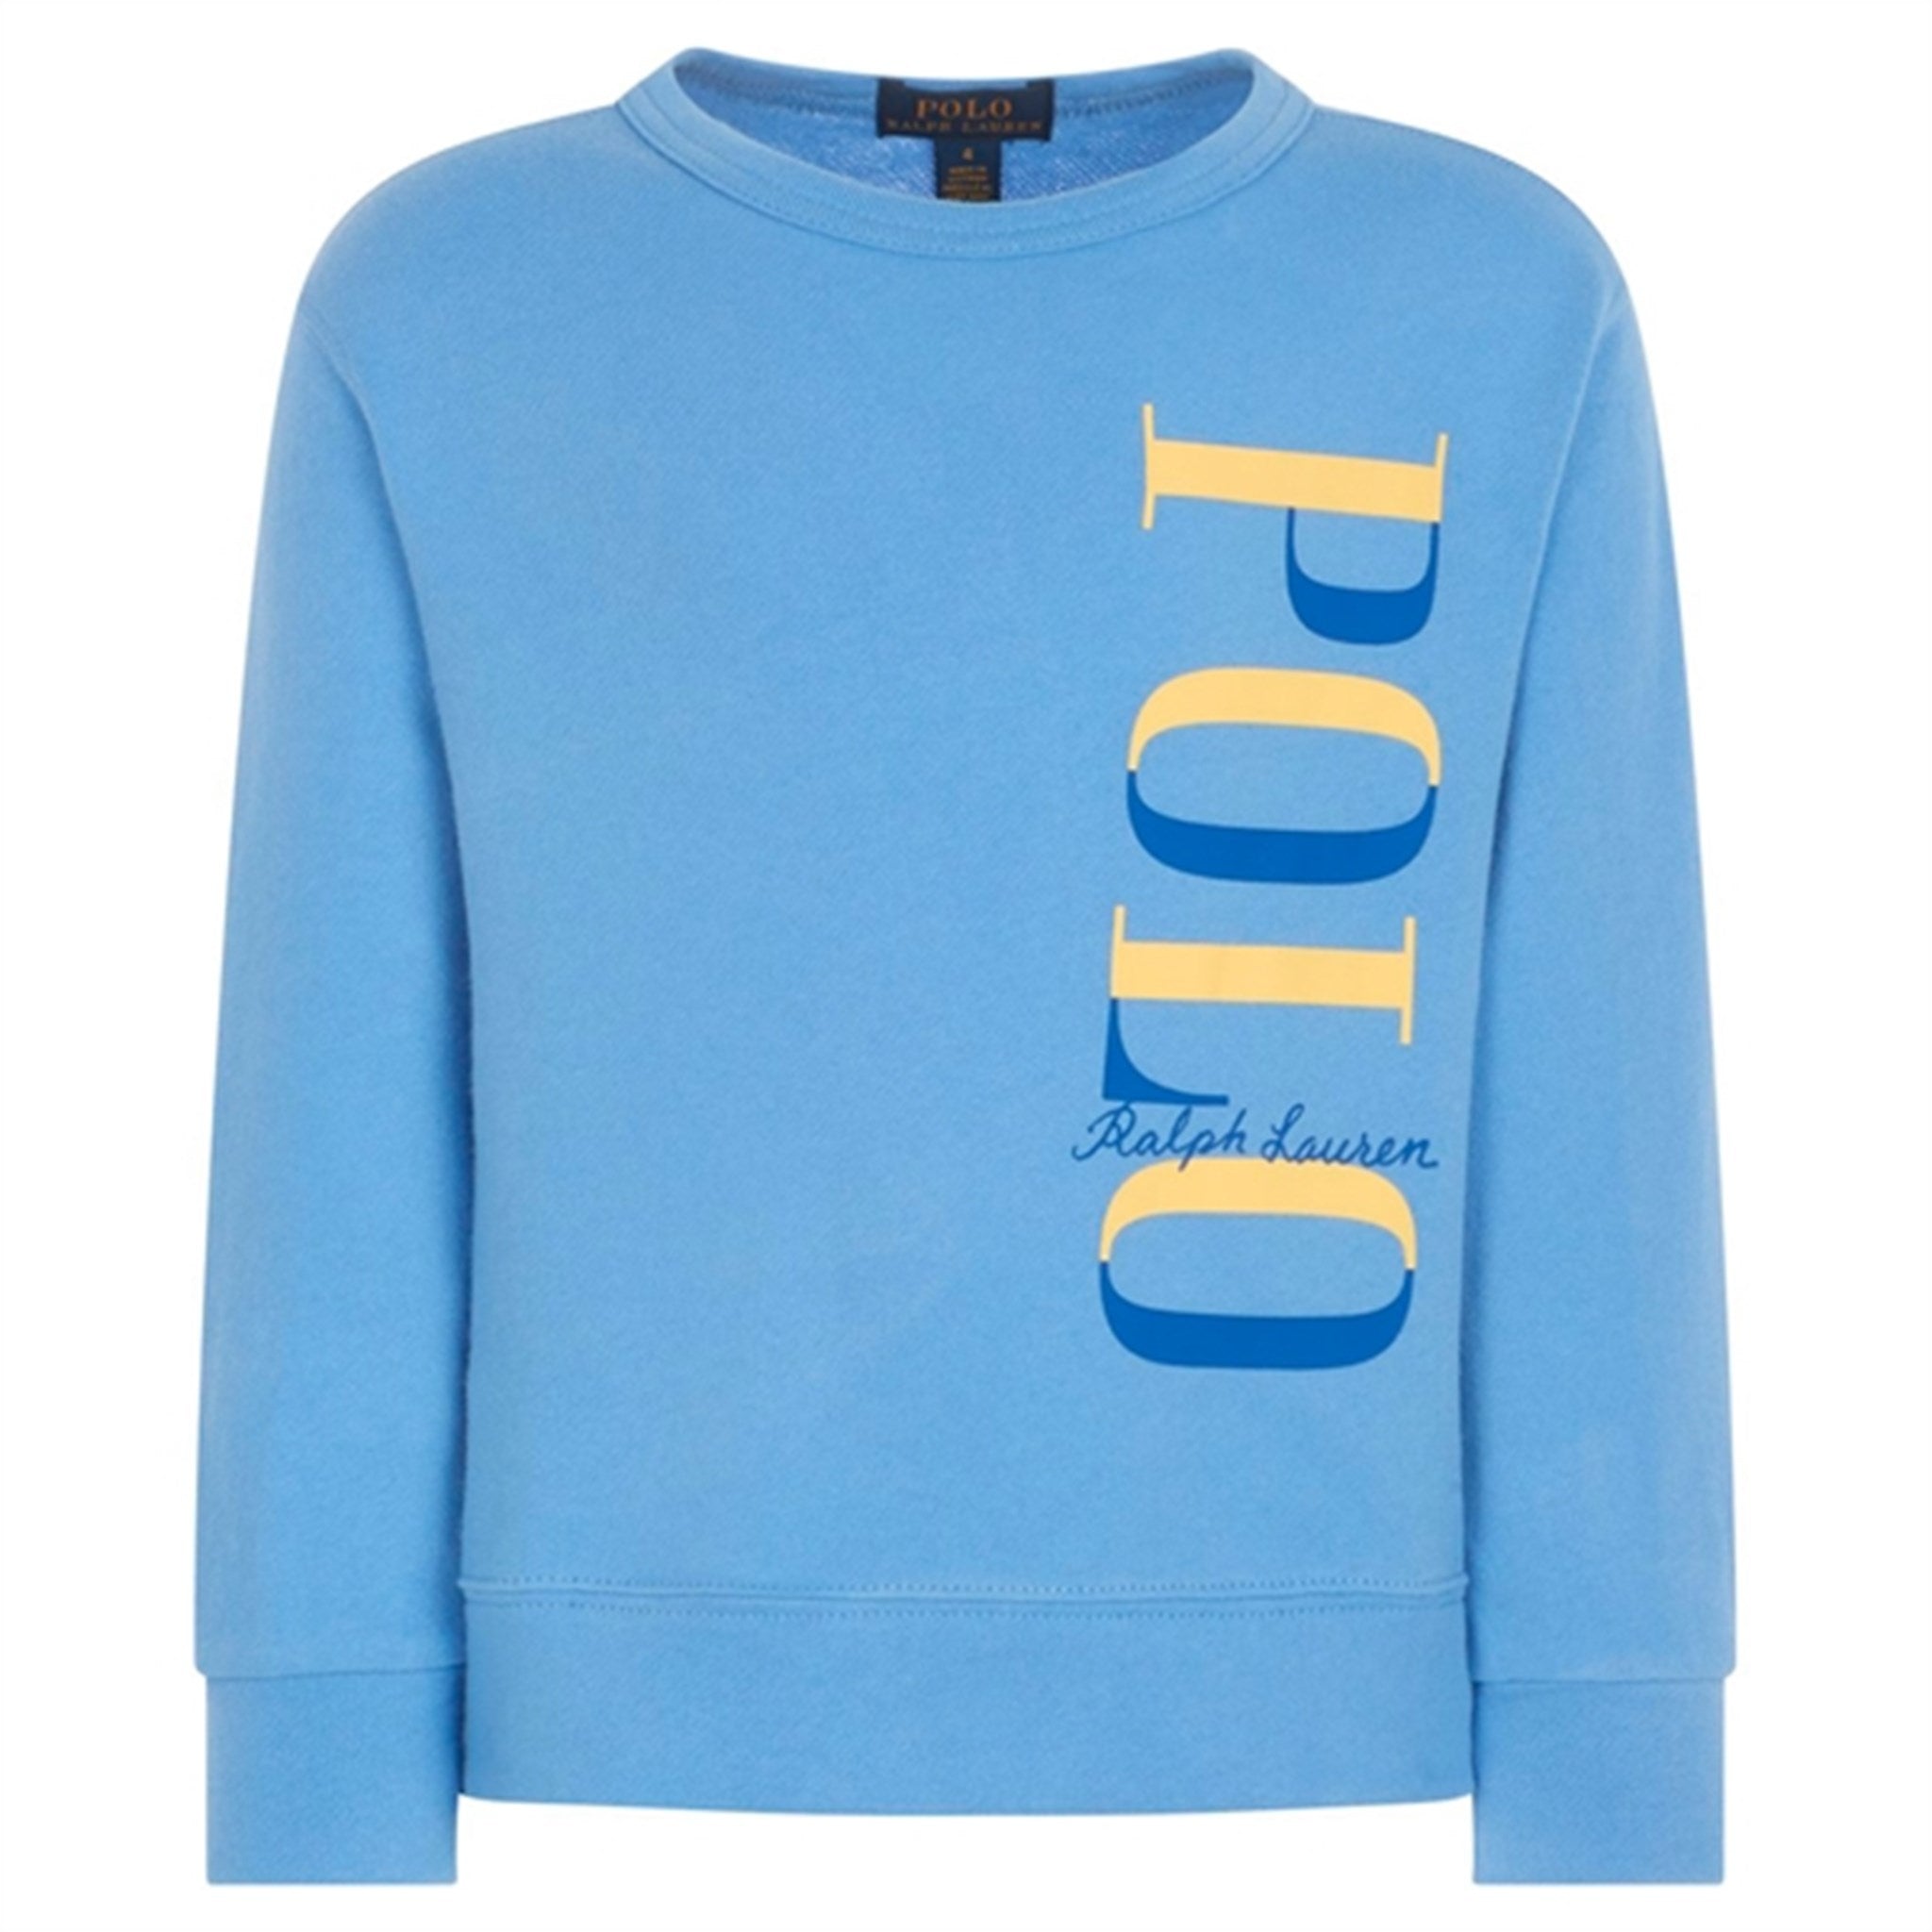 Polo Ralph Lauren Sweatshirt Harbour Island Blue